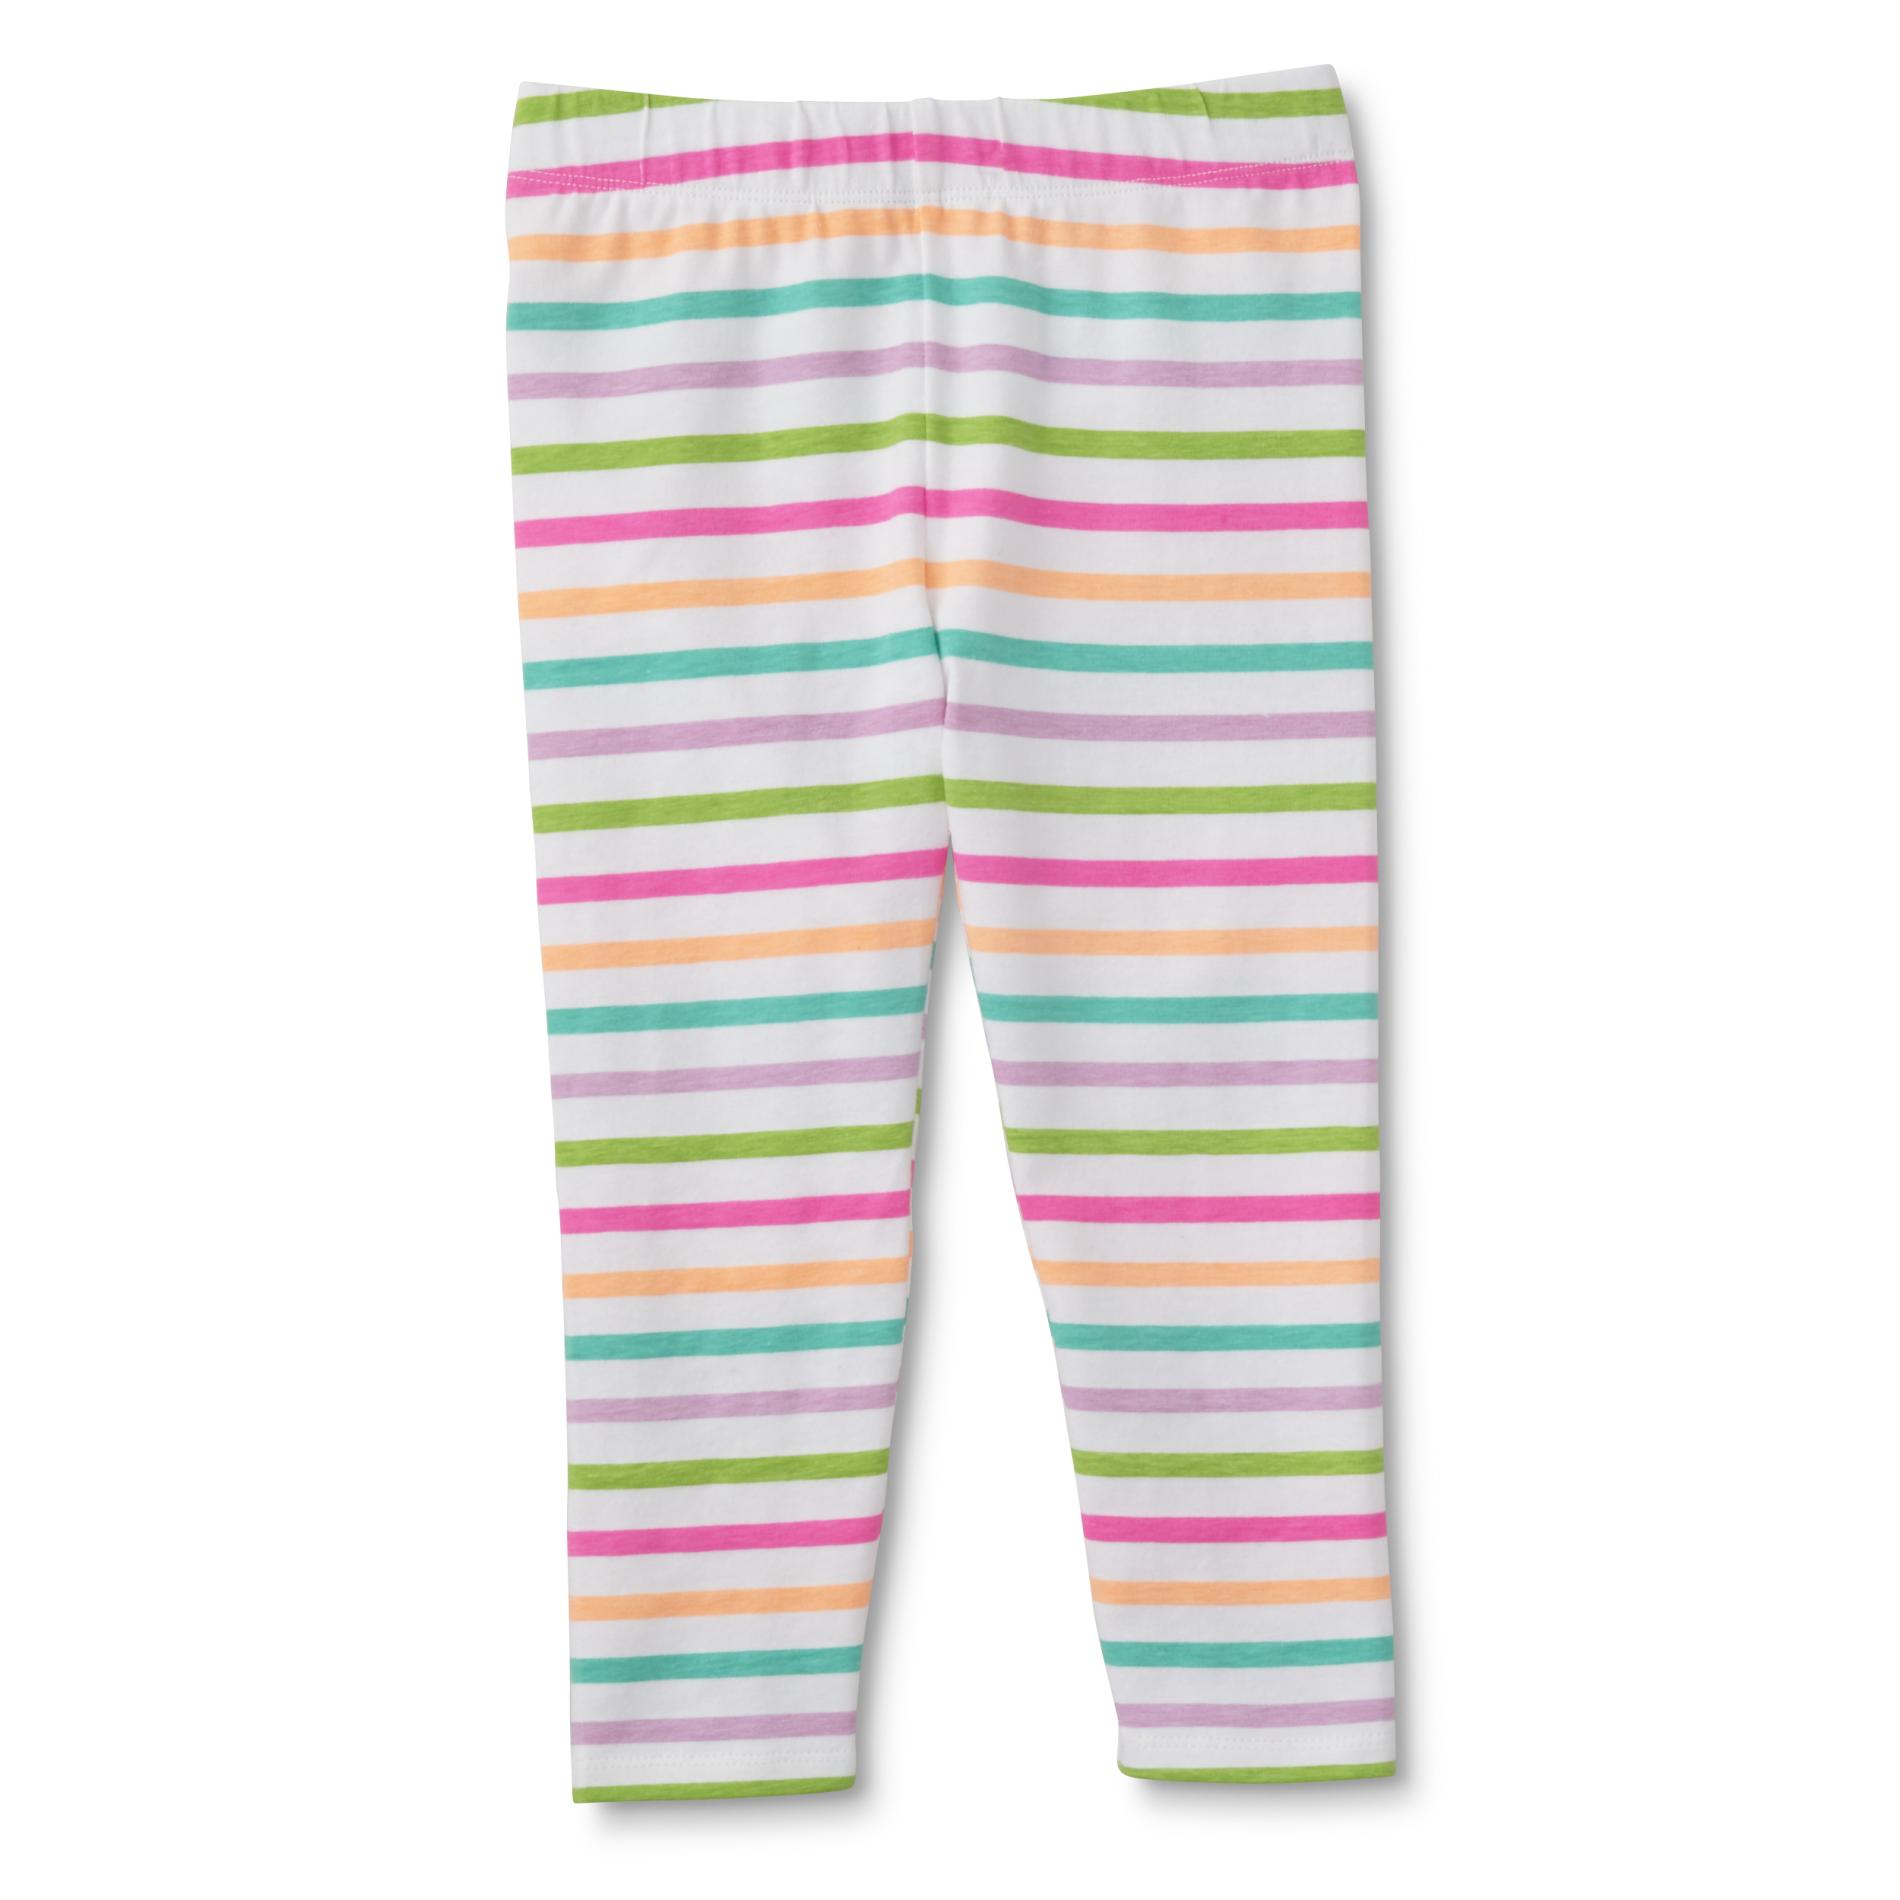 WonderKids Infant & Toddler Girls' Leggings - Striped